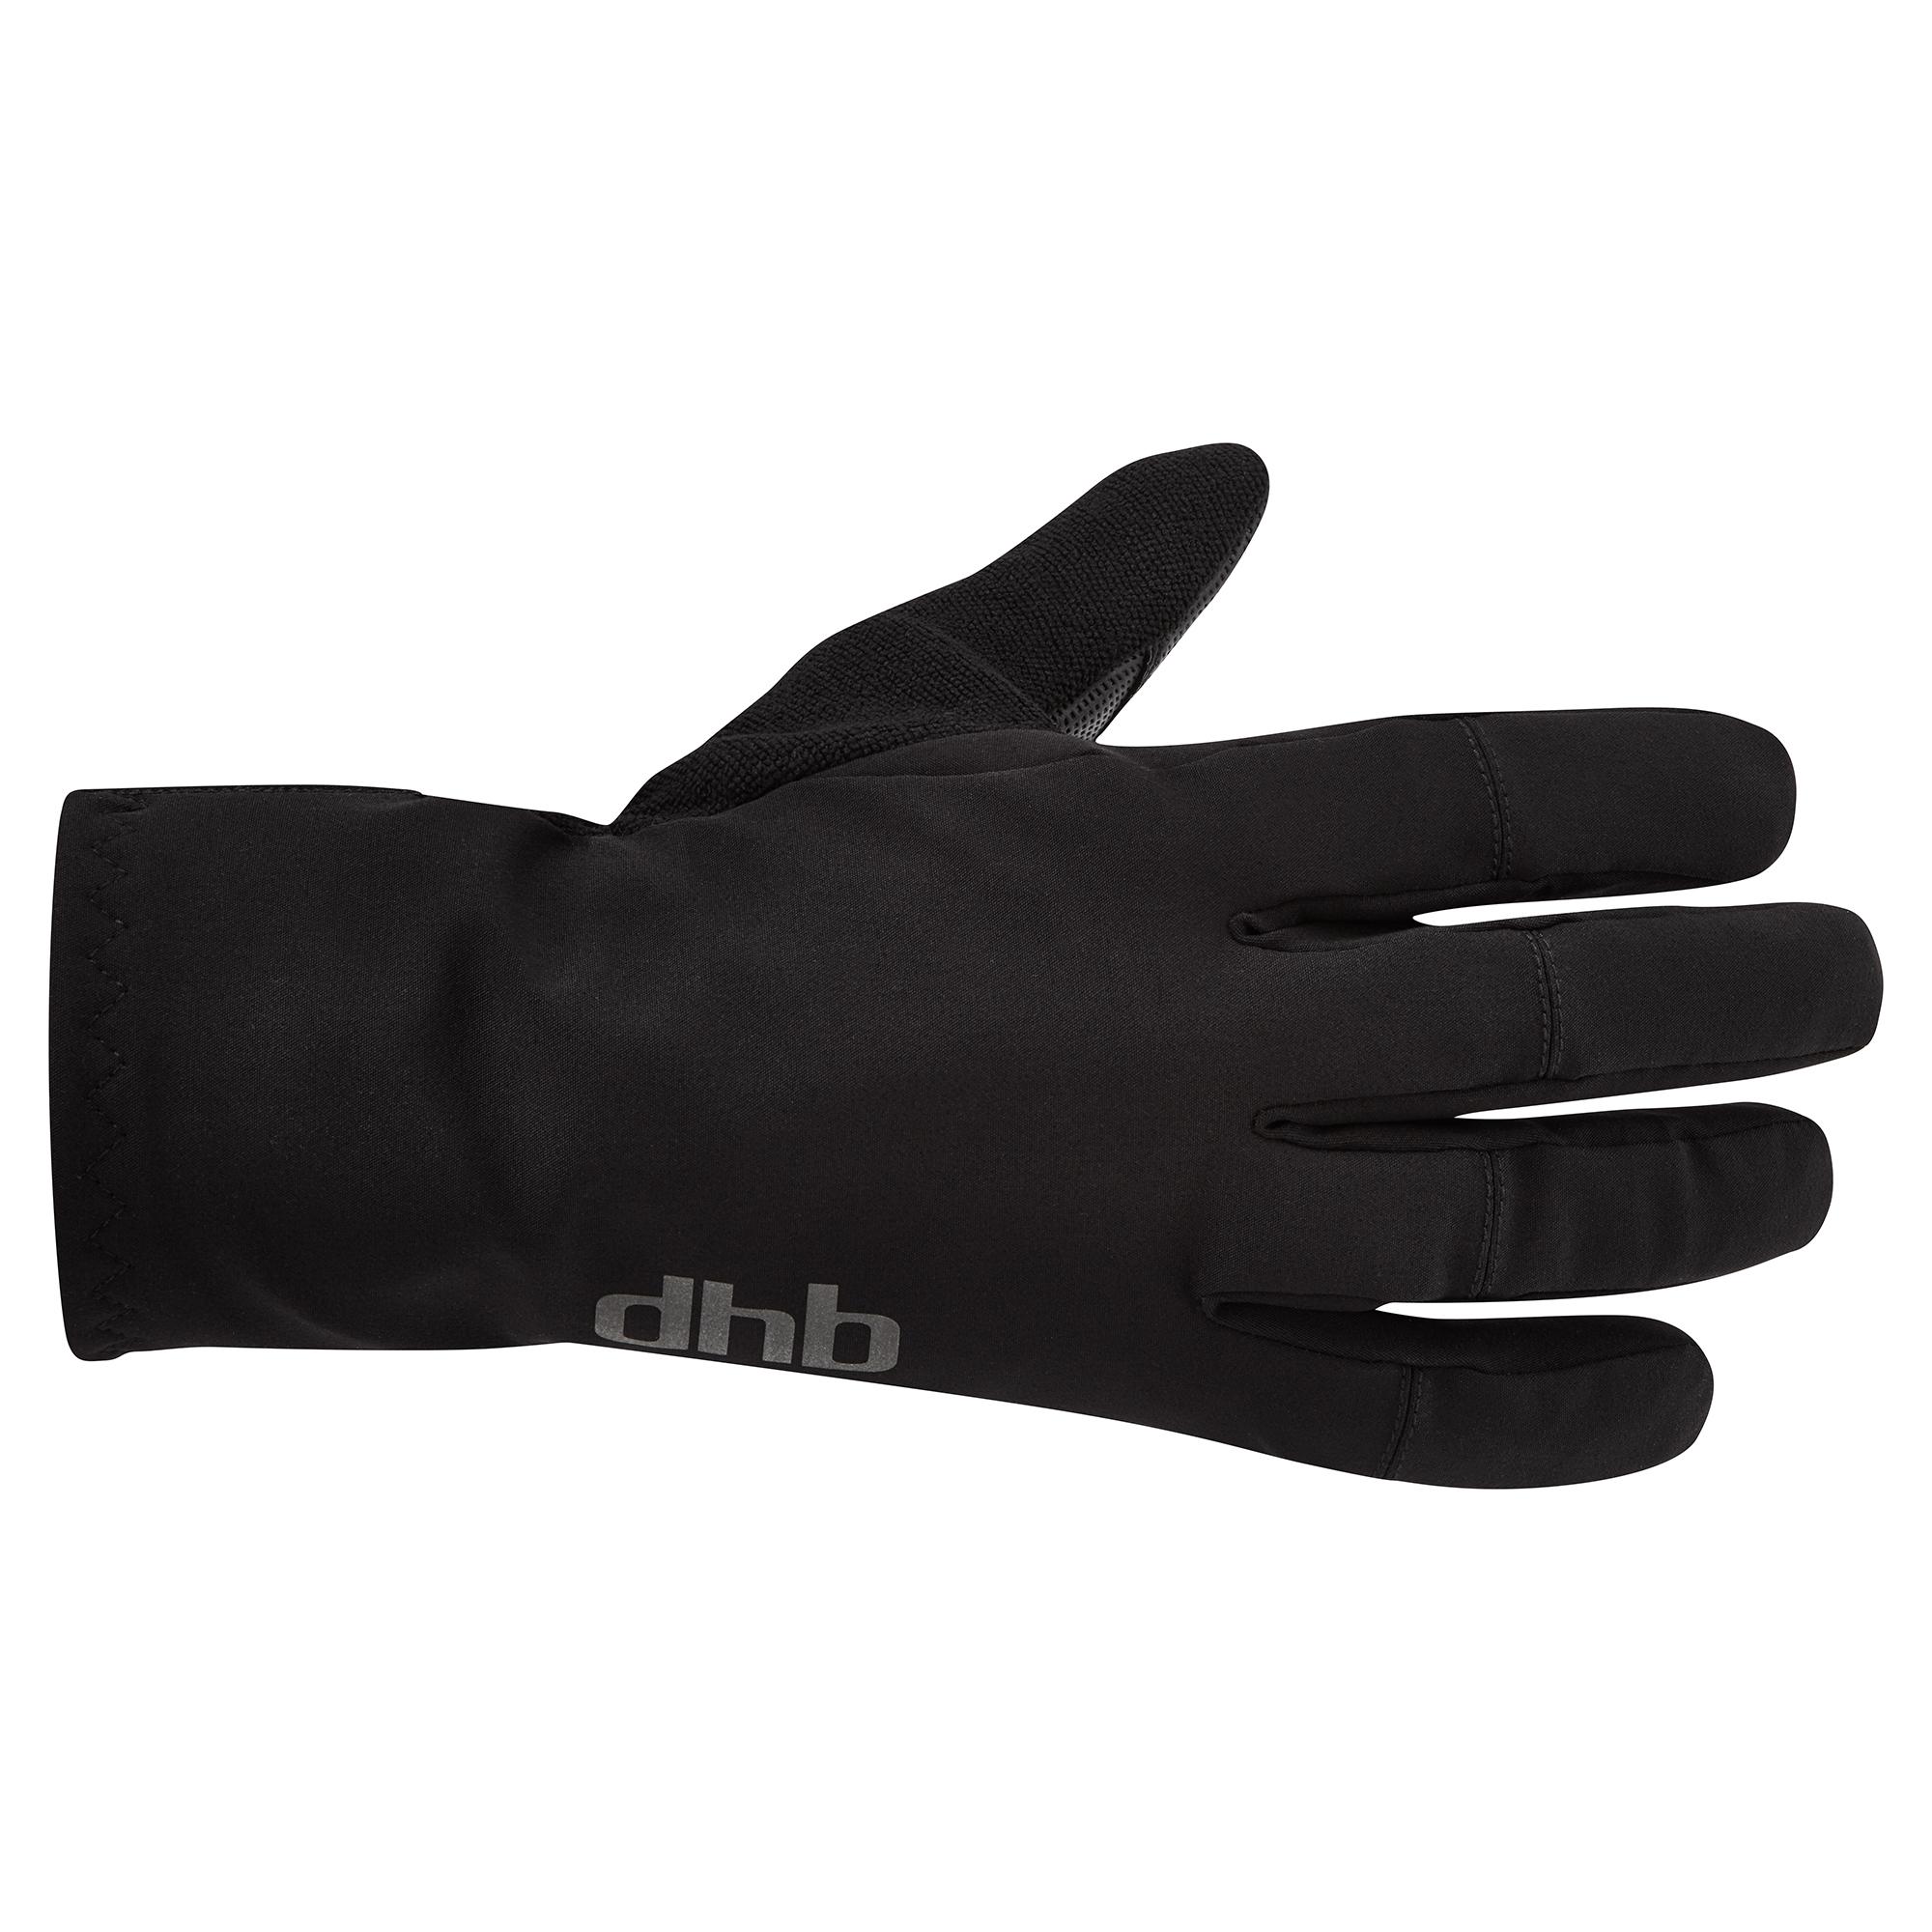 Dhb Merino Lined Winter Glove - Black